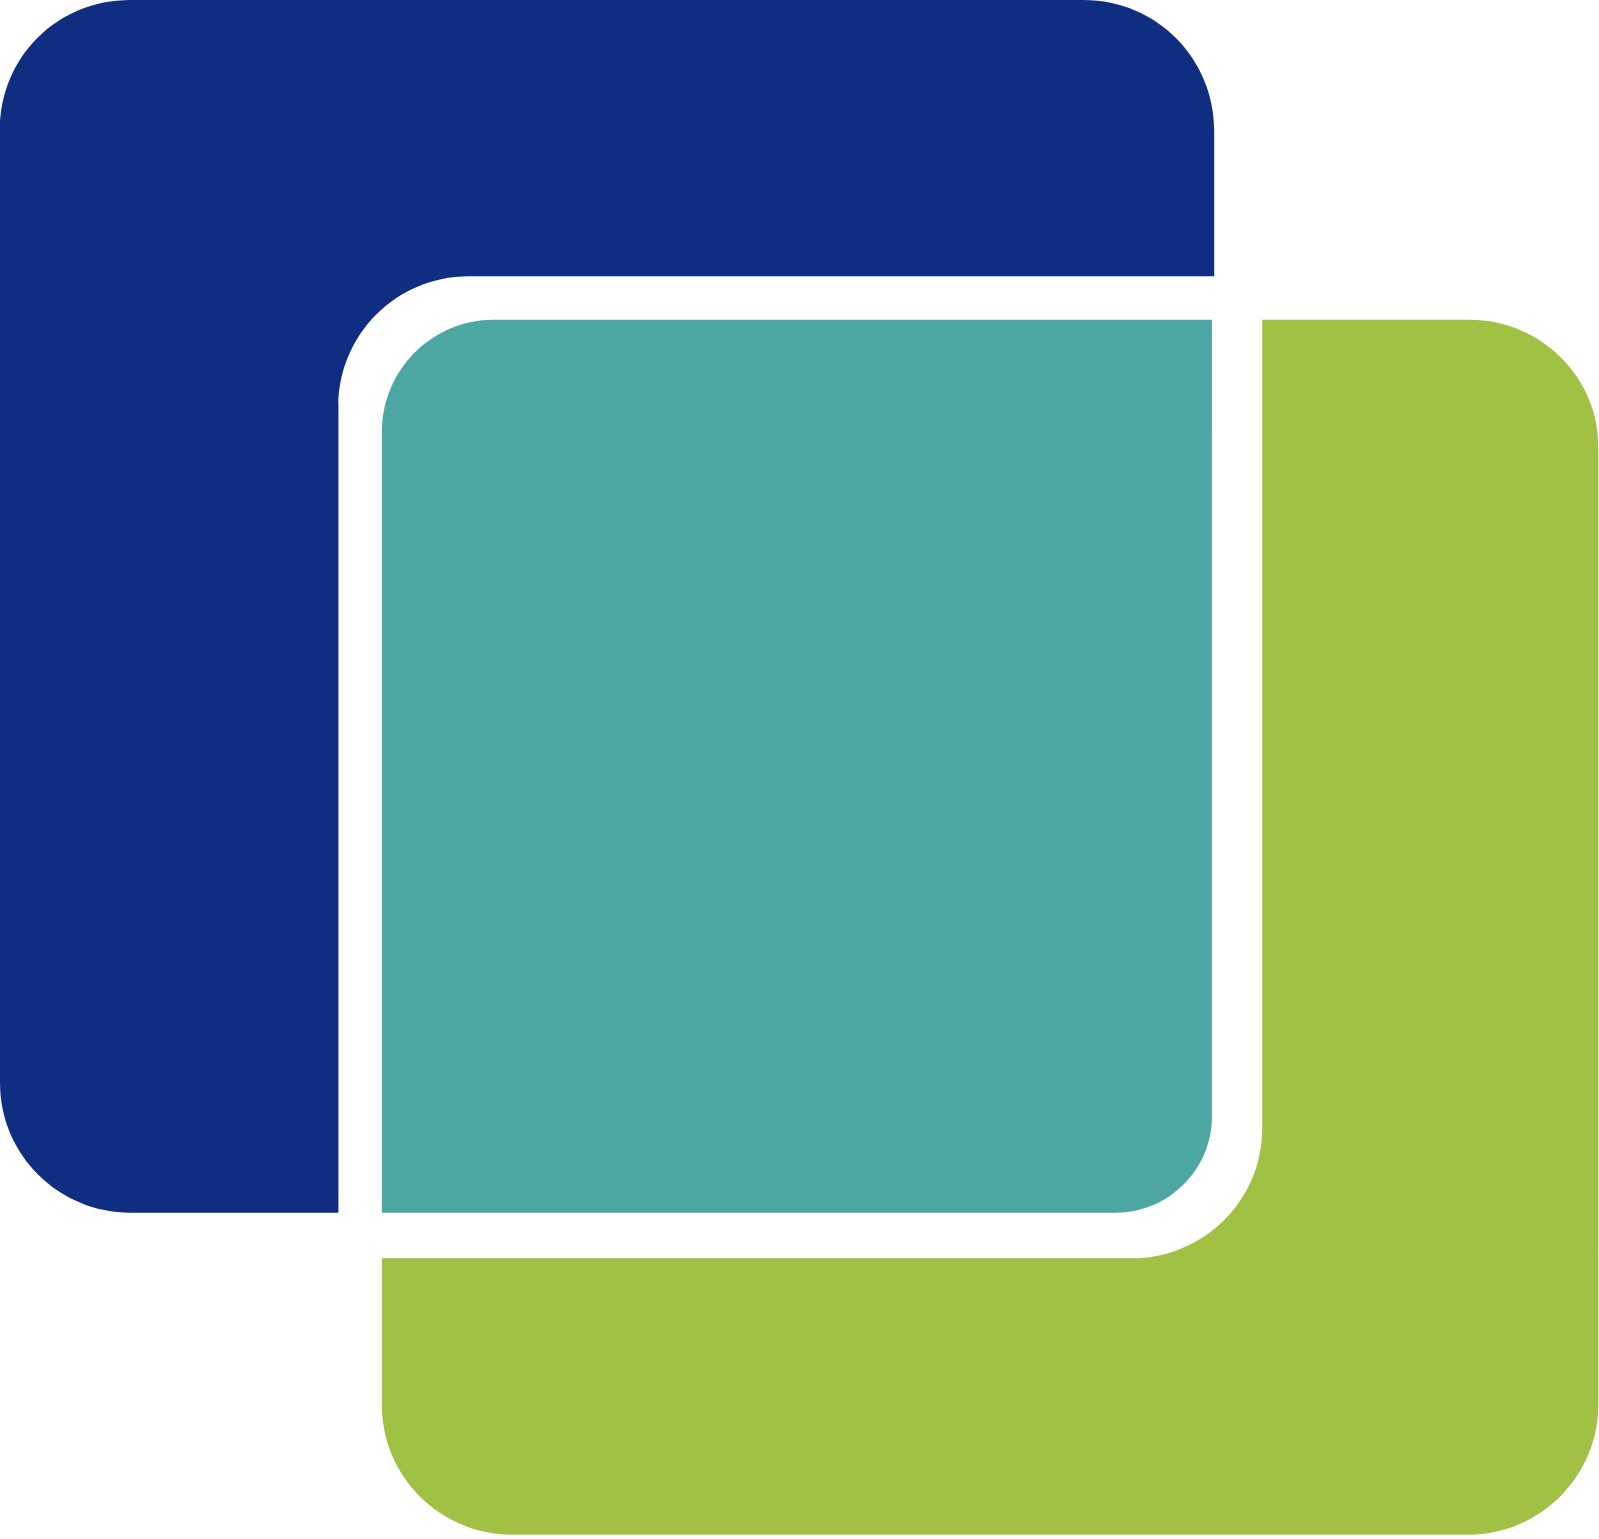 SOC Telemed logo (transparent PNG)